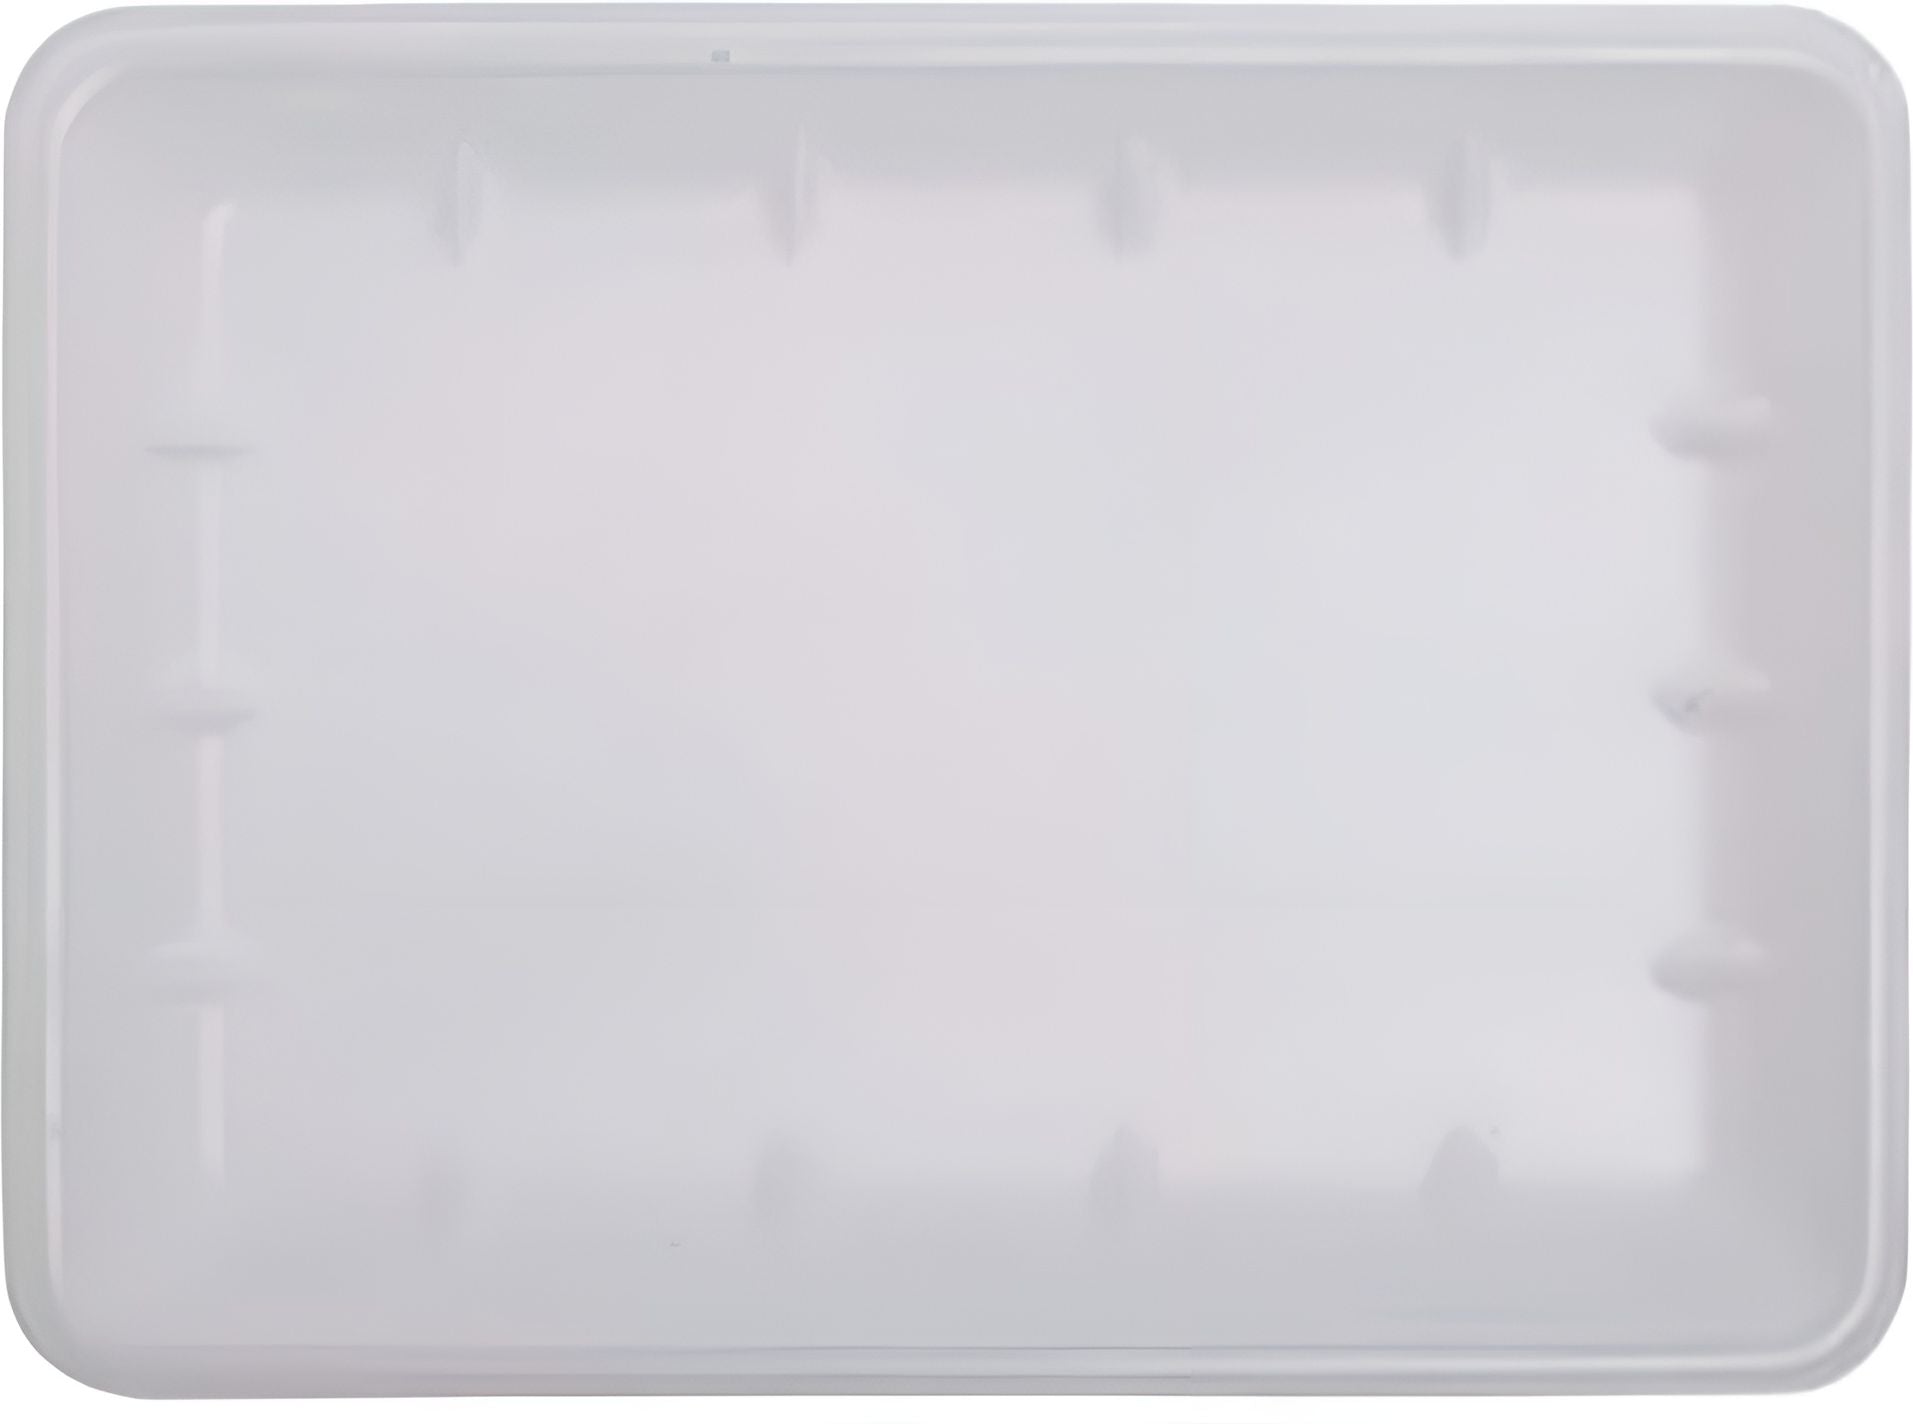 Dyne-A-Pak Inc. - 14" x 8.63" x 1.63" 25D White Foam Meat Trays, 100 Per Case - 201025DW00